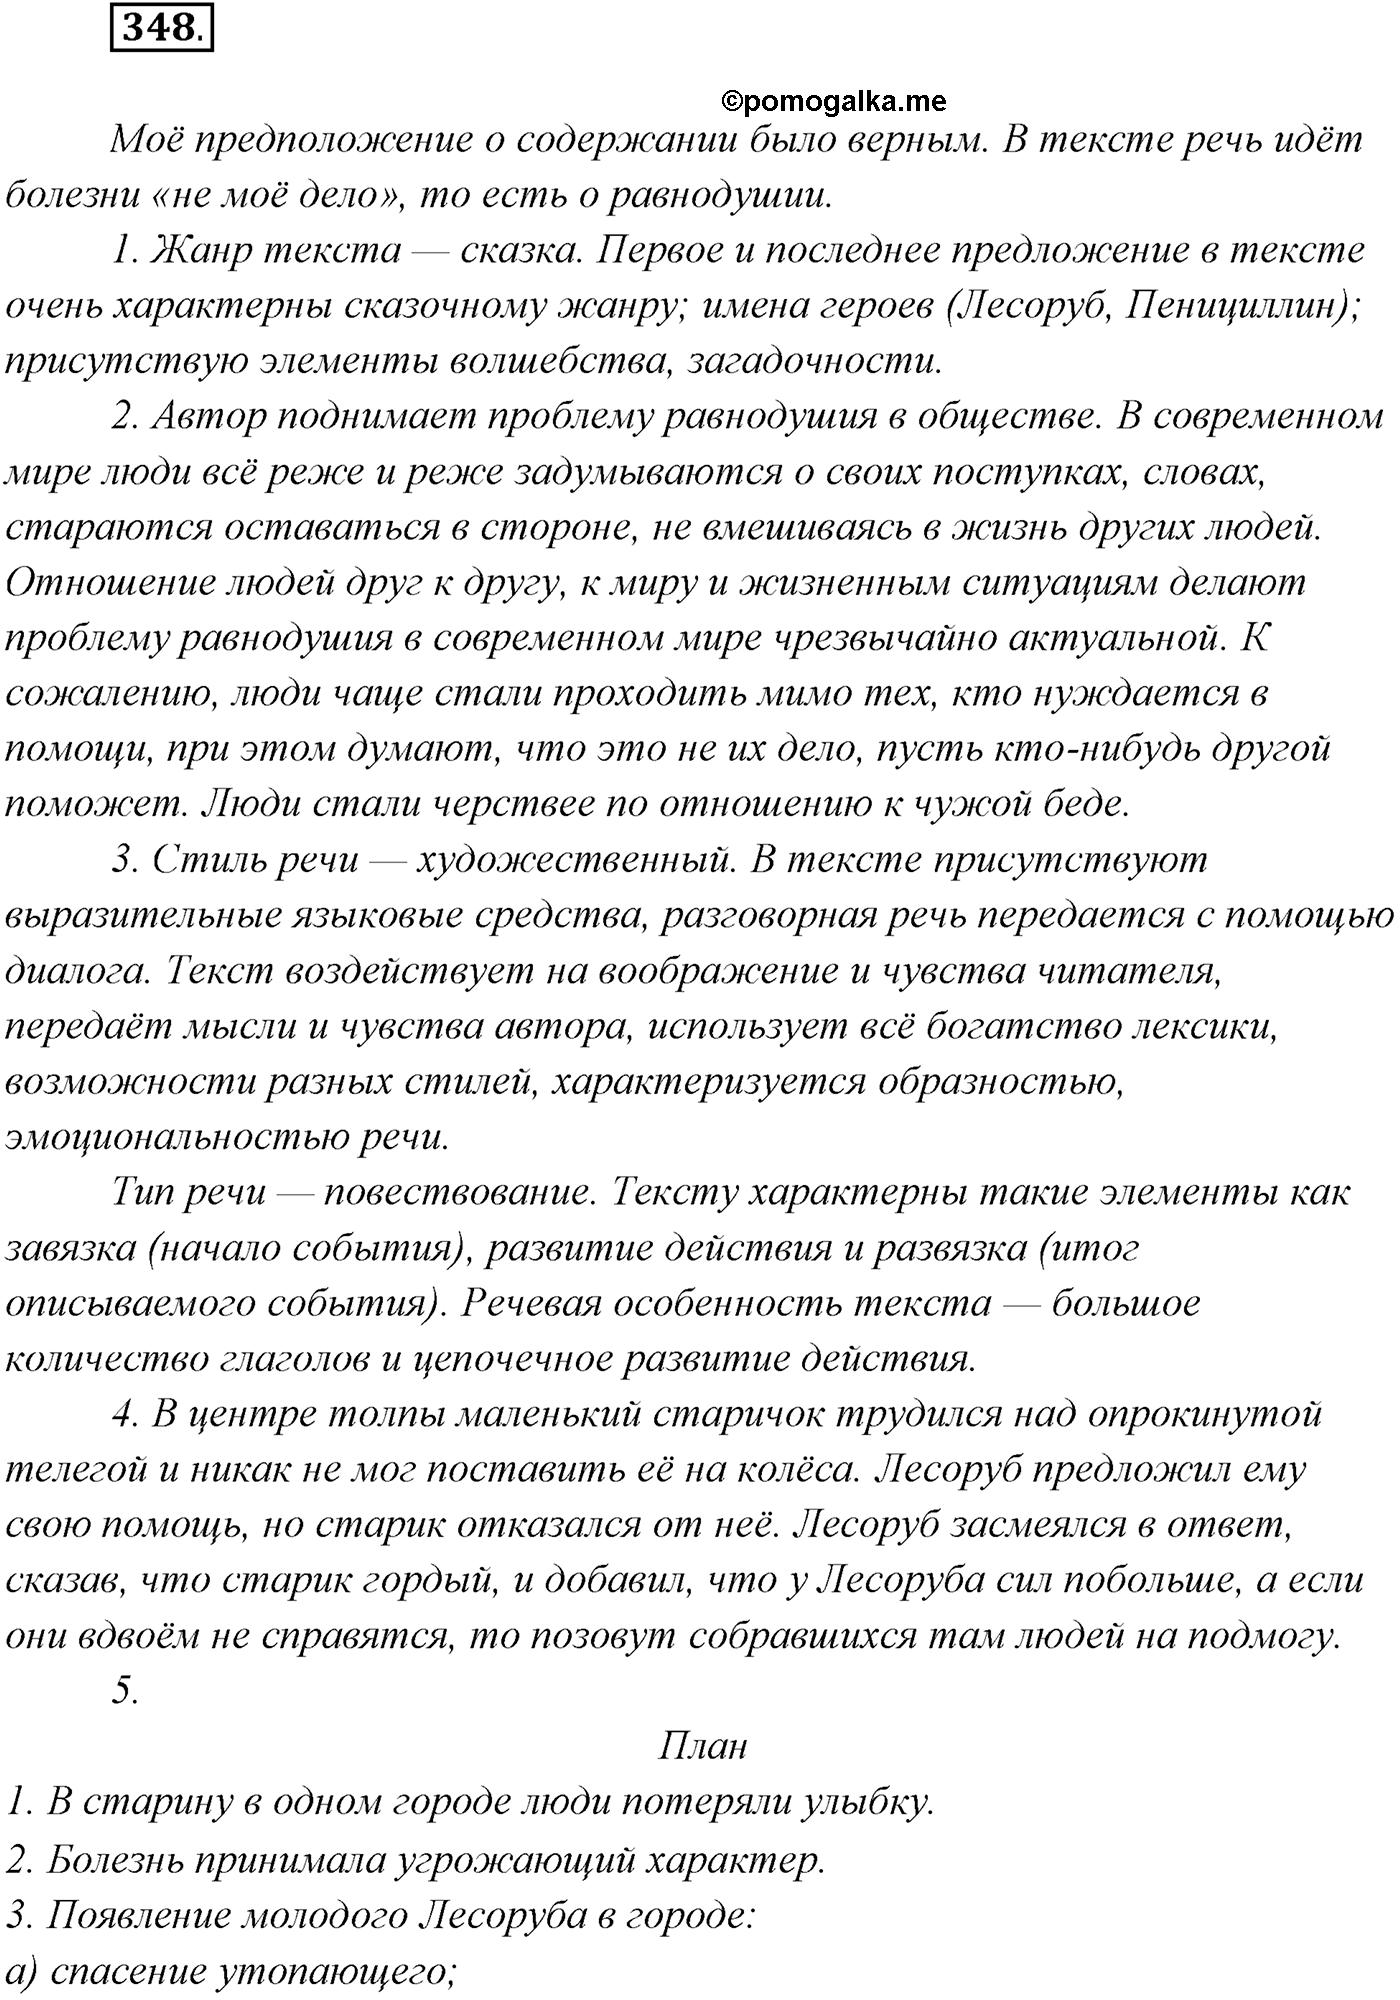 упражнение №348 русский язык 9 класс Рыбченкова, Александрова